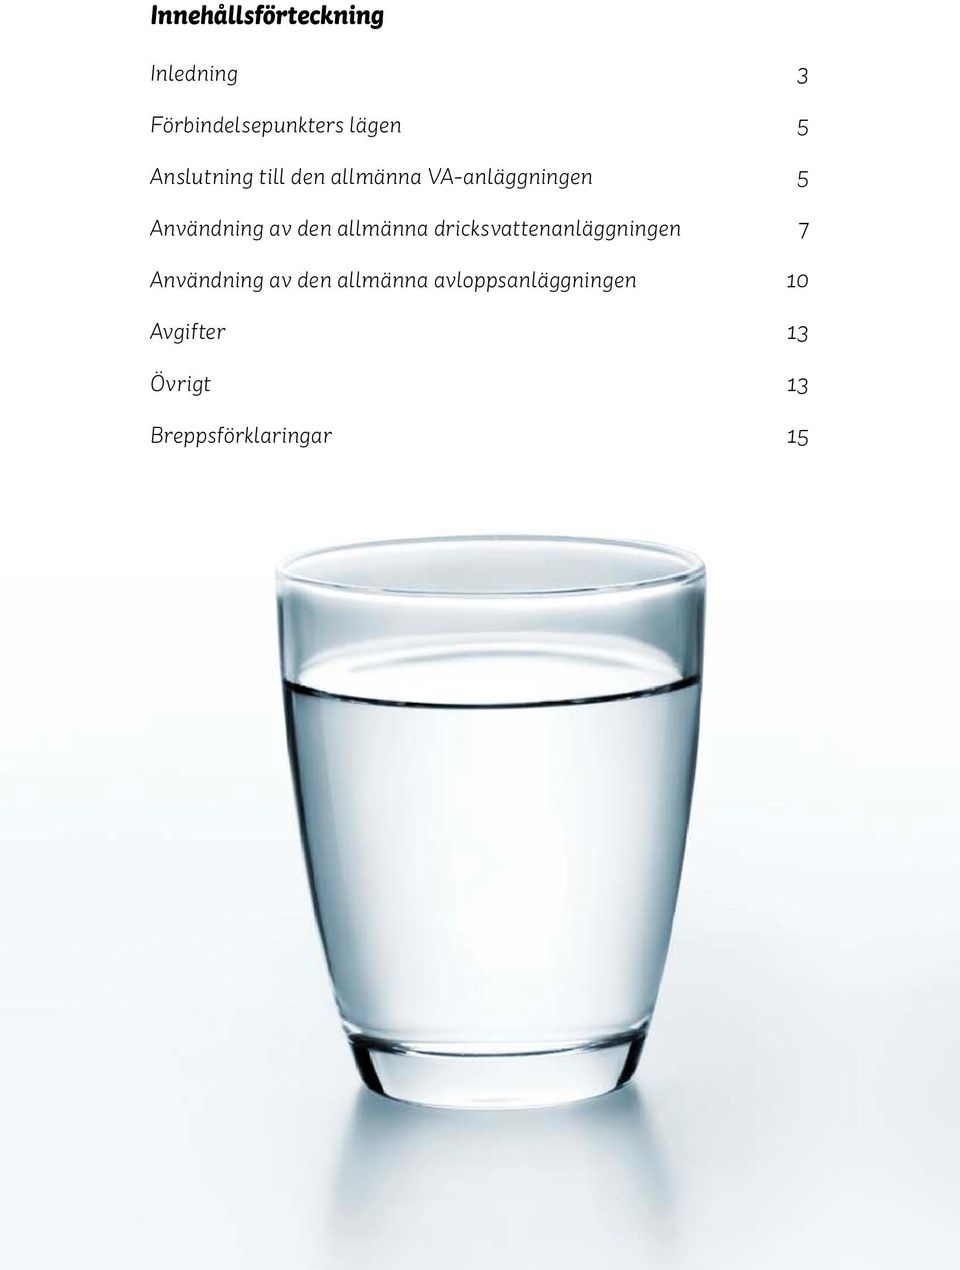 allmänna dricksvattenanläggningen 7 Användning av den allmänna